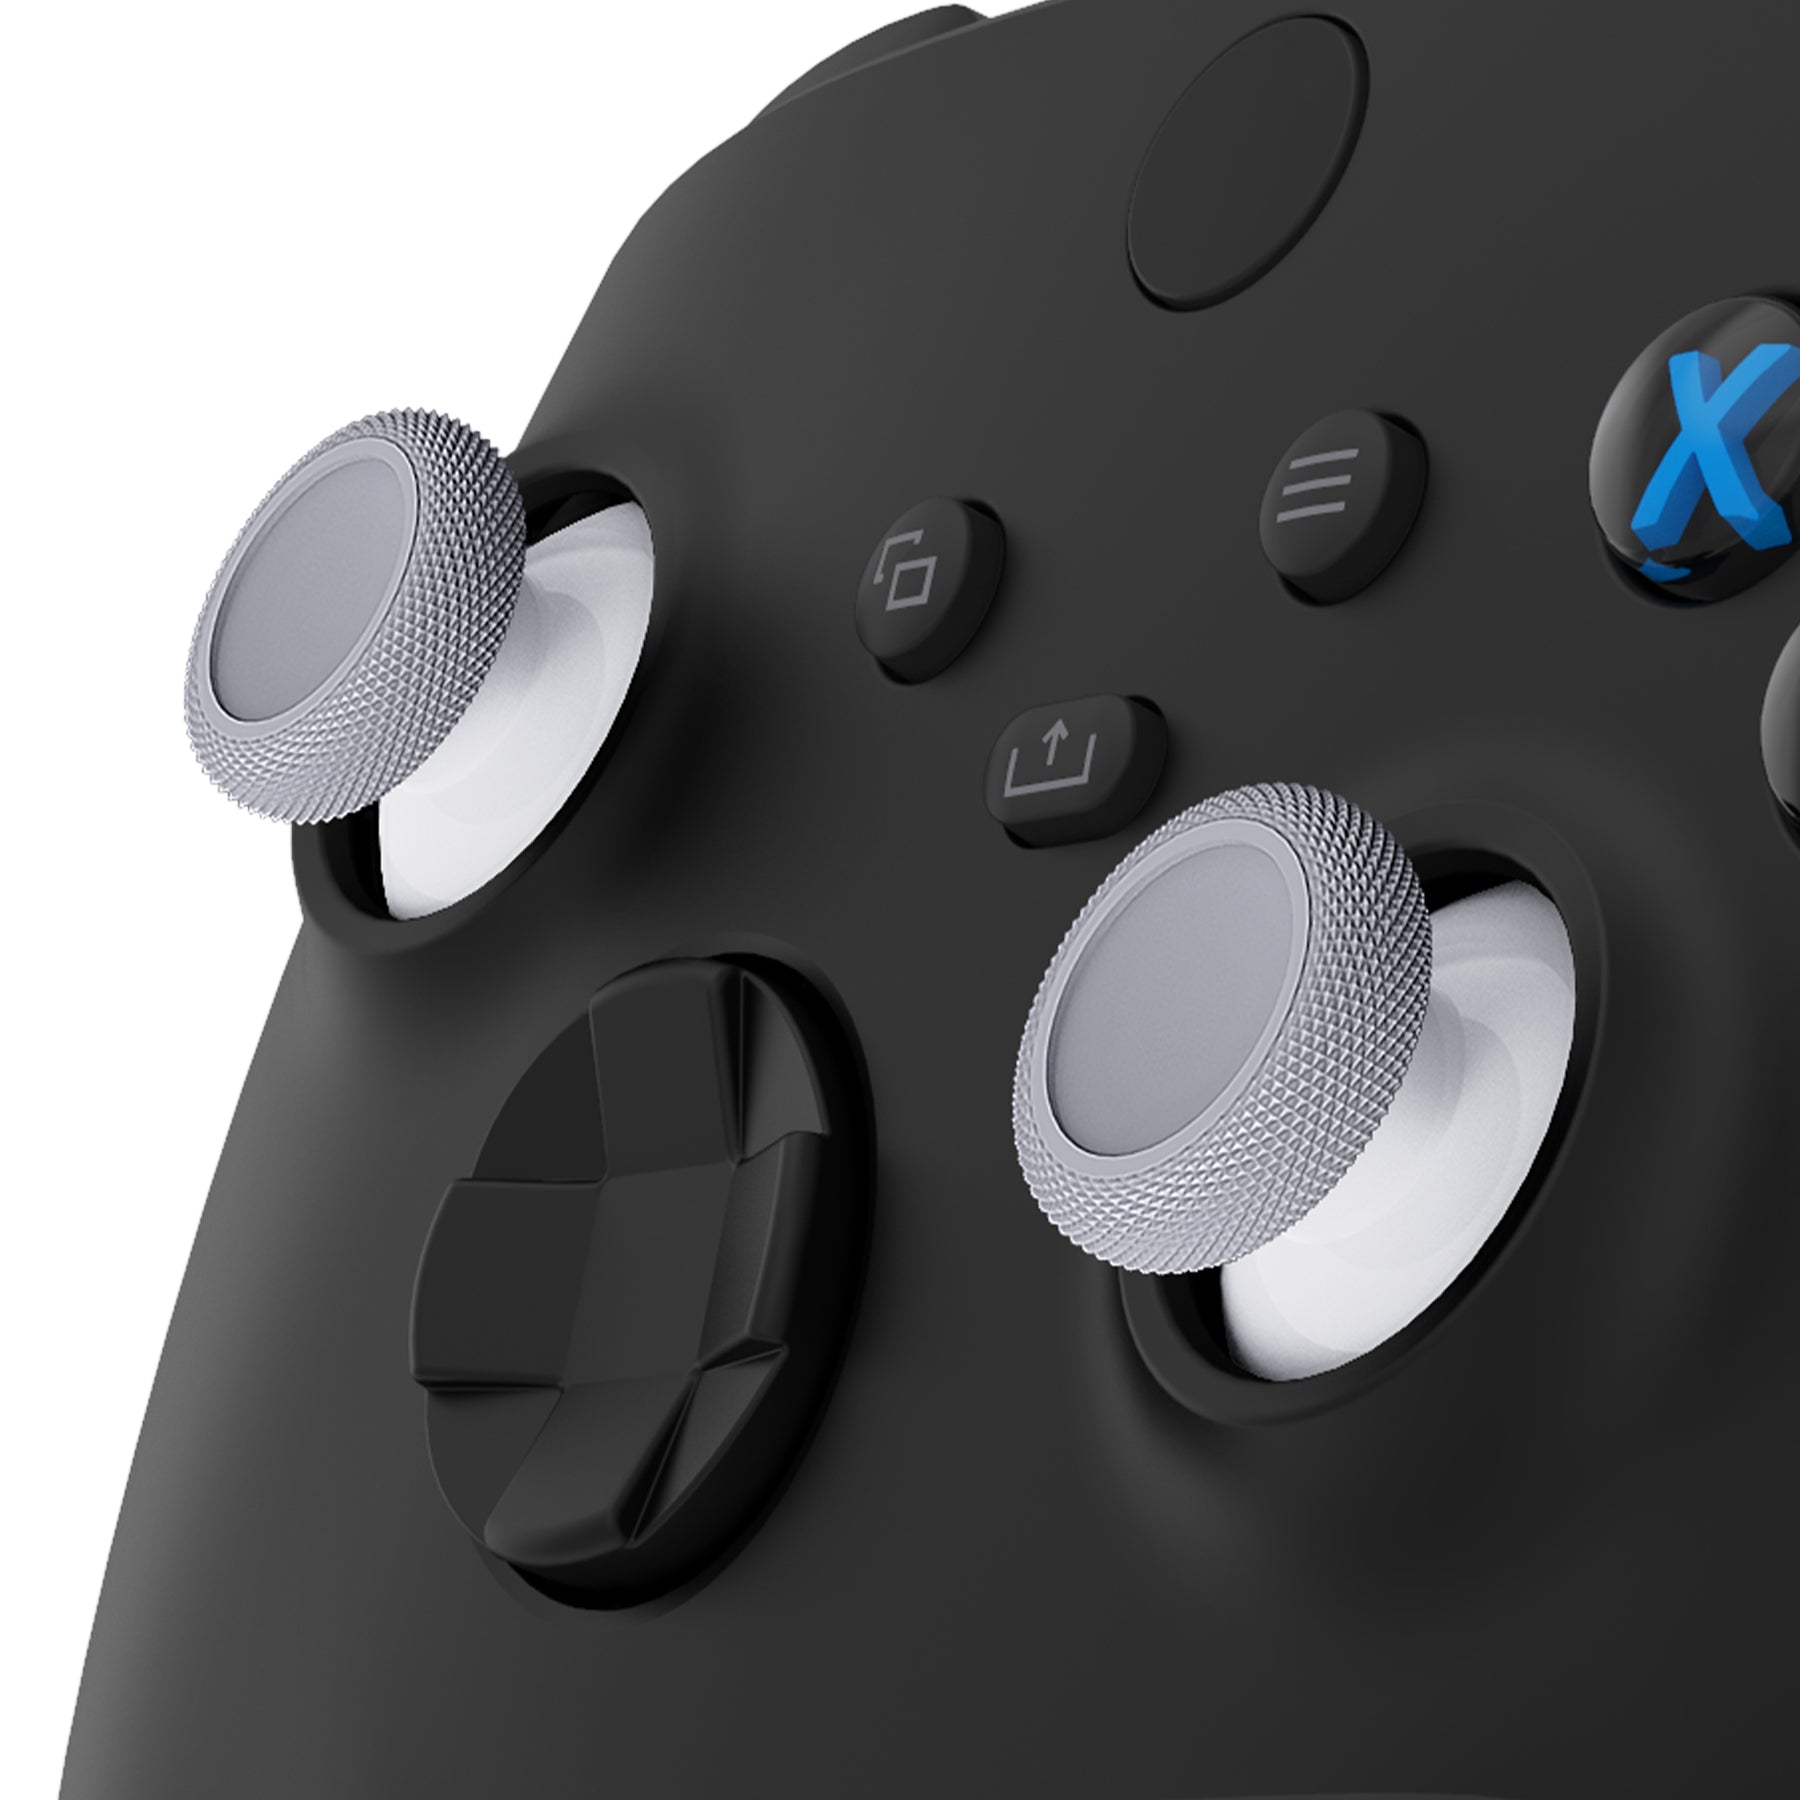 Xbox Wireless Controller – Robot White for Xbox Series X